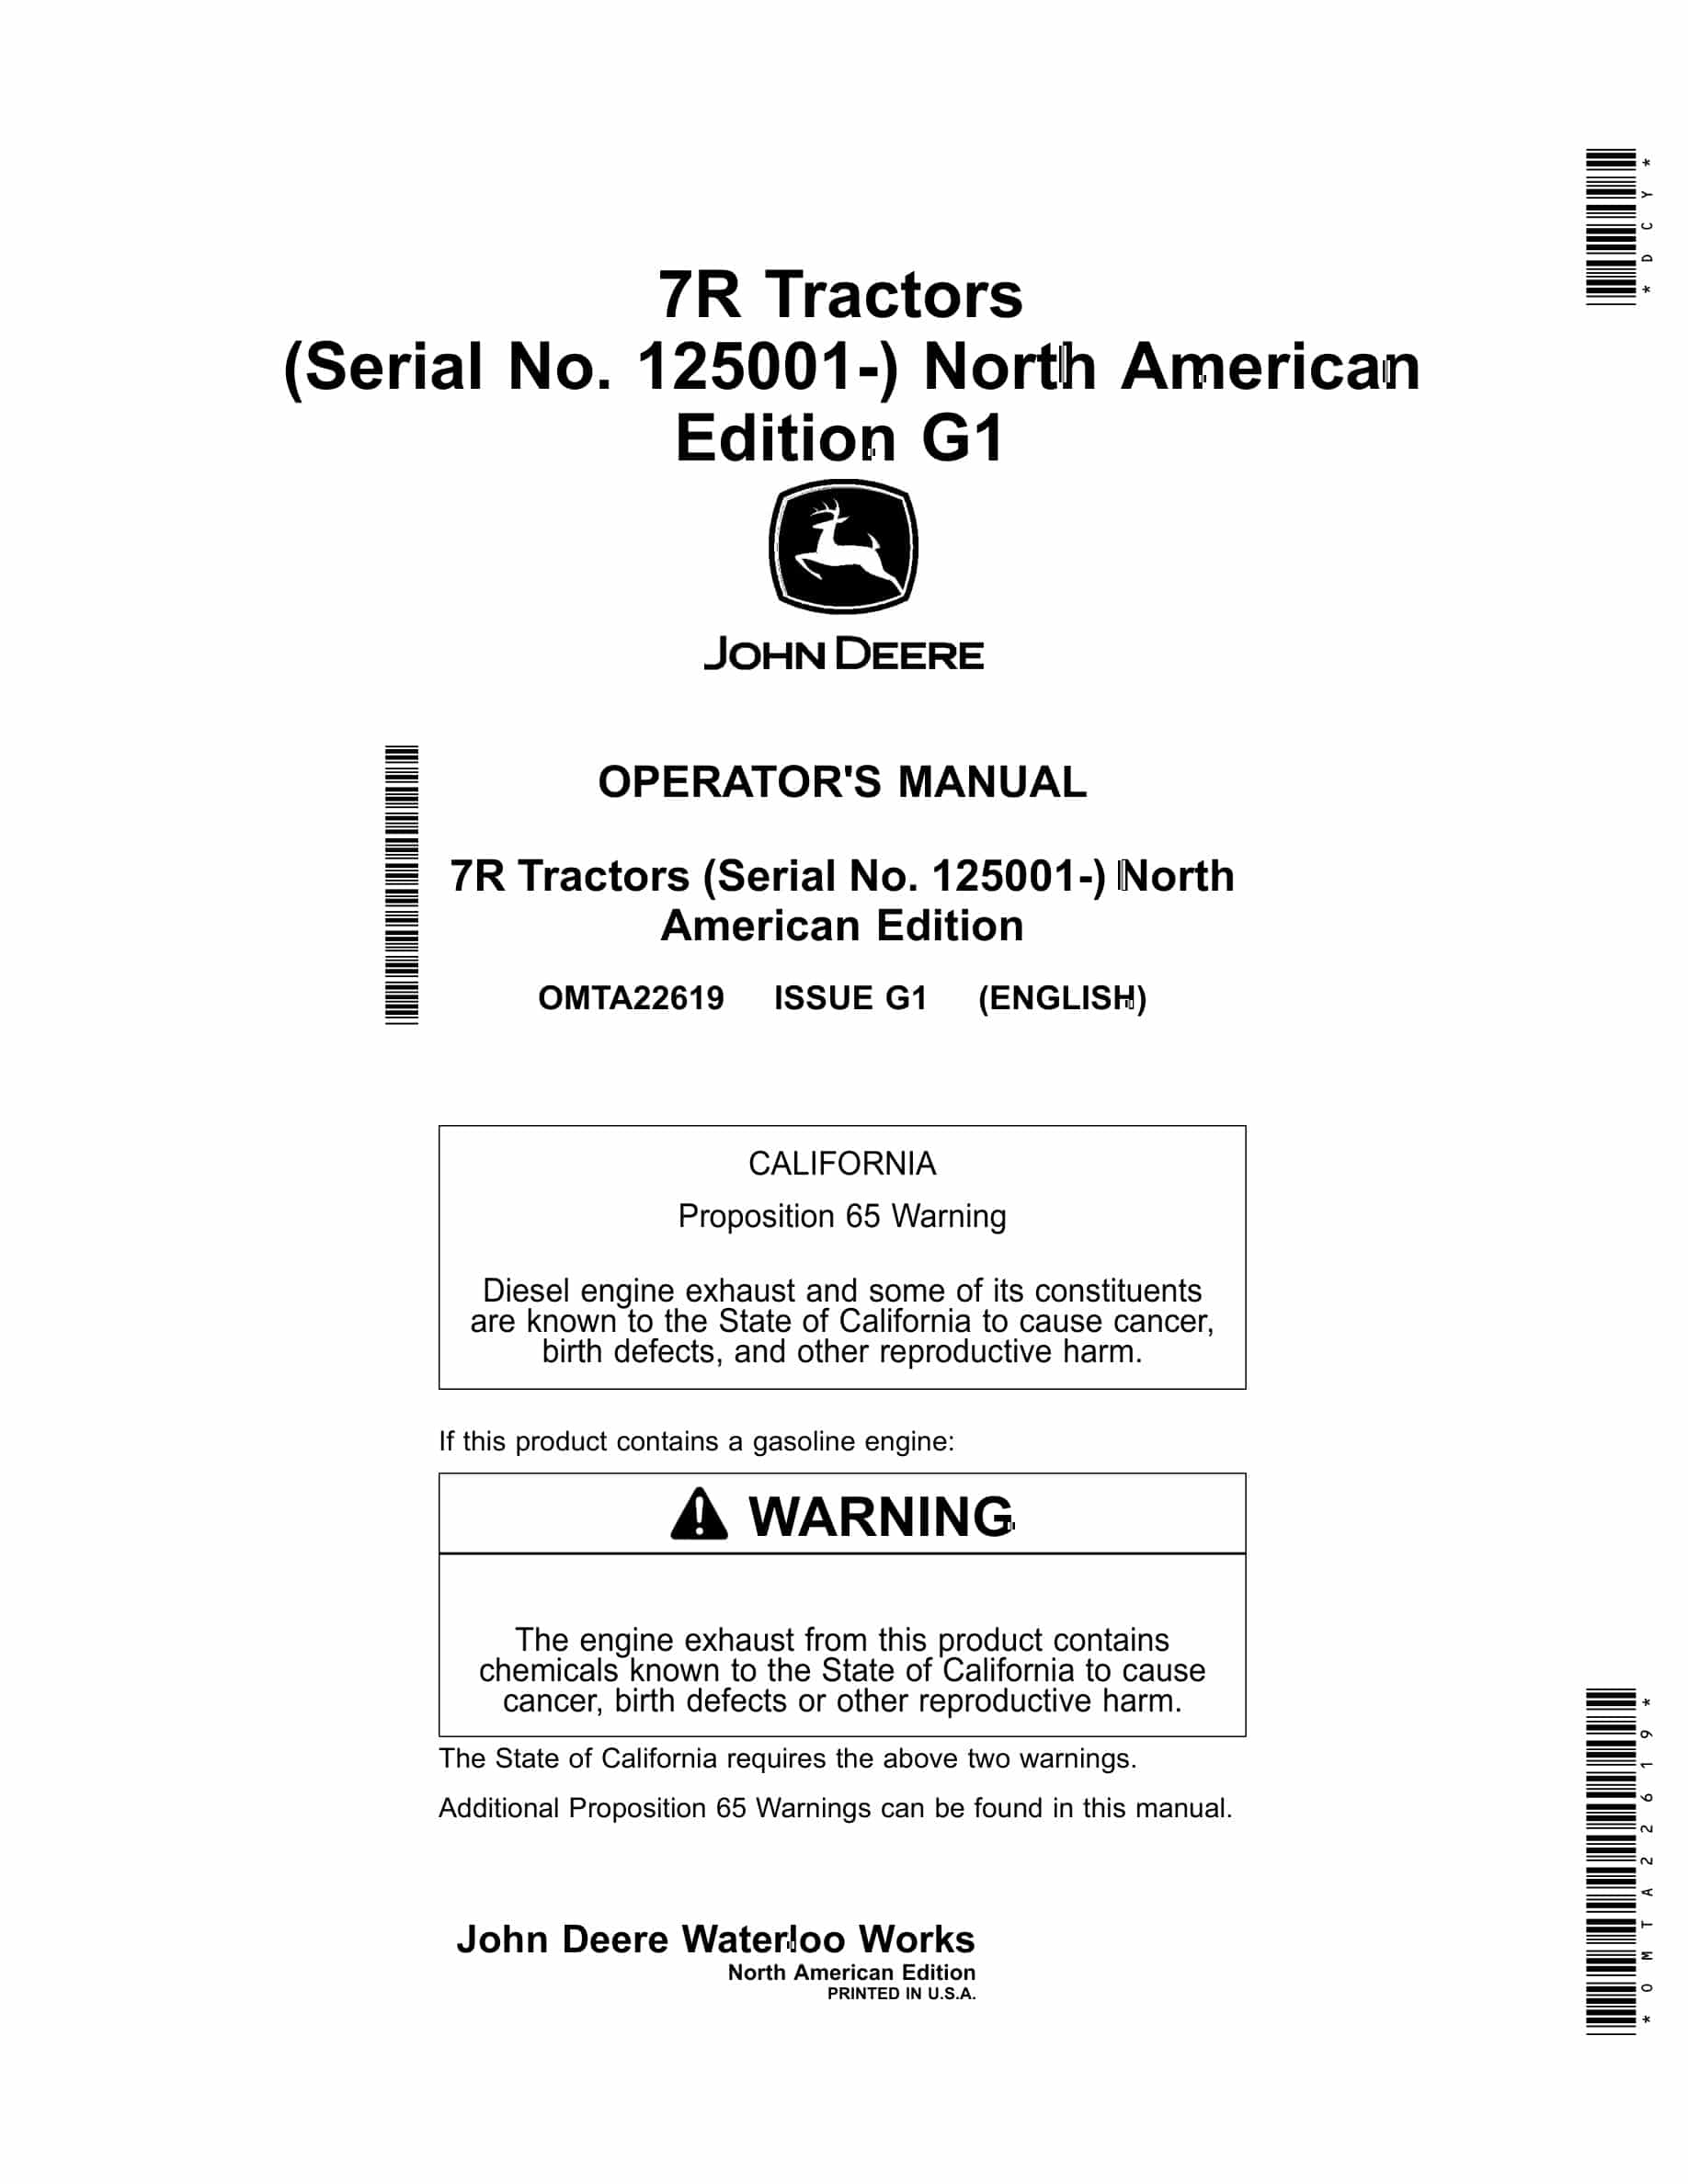 John Deere 7R Tractor Operator Manual OMTA22619-1